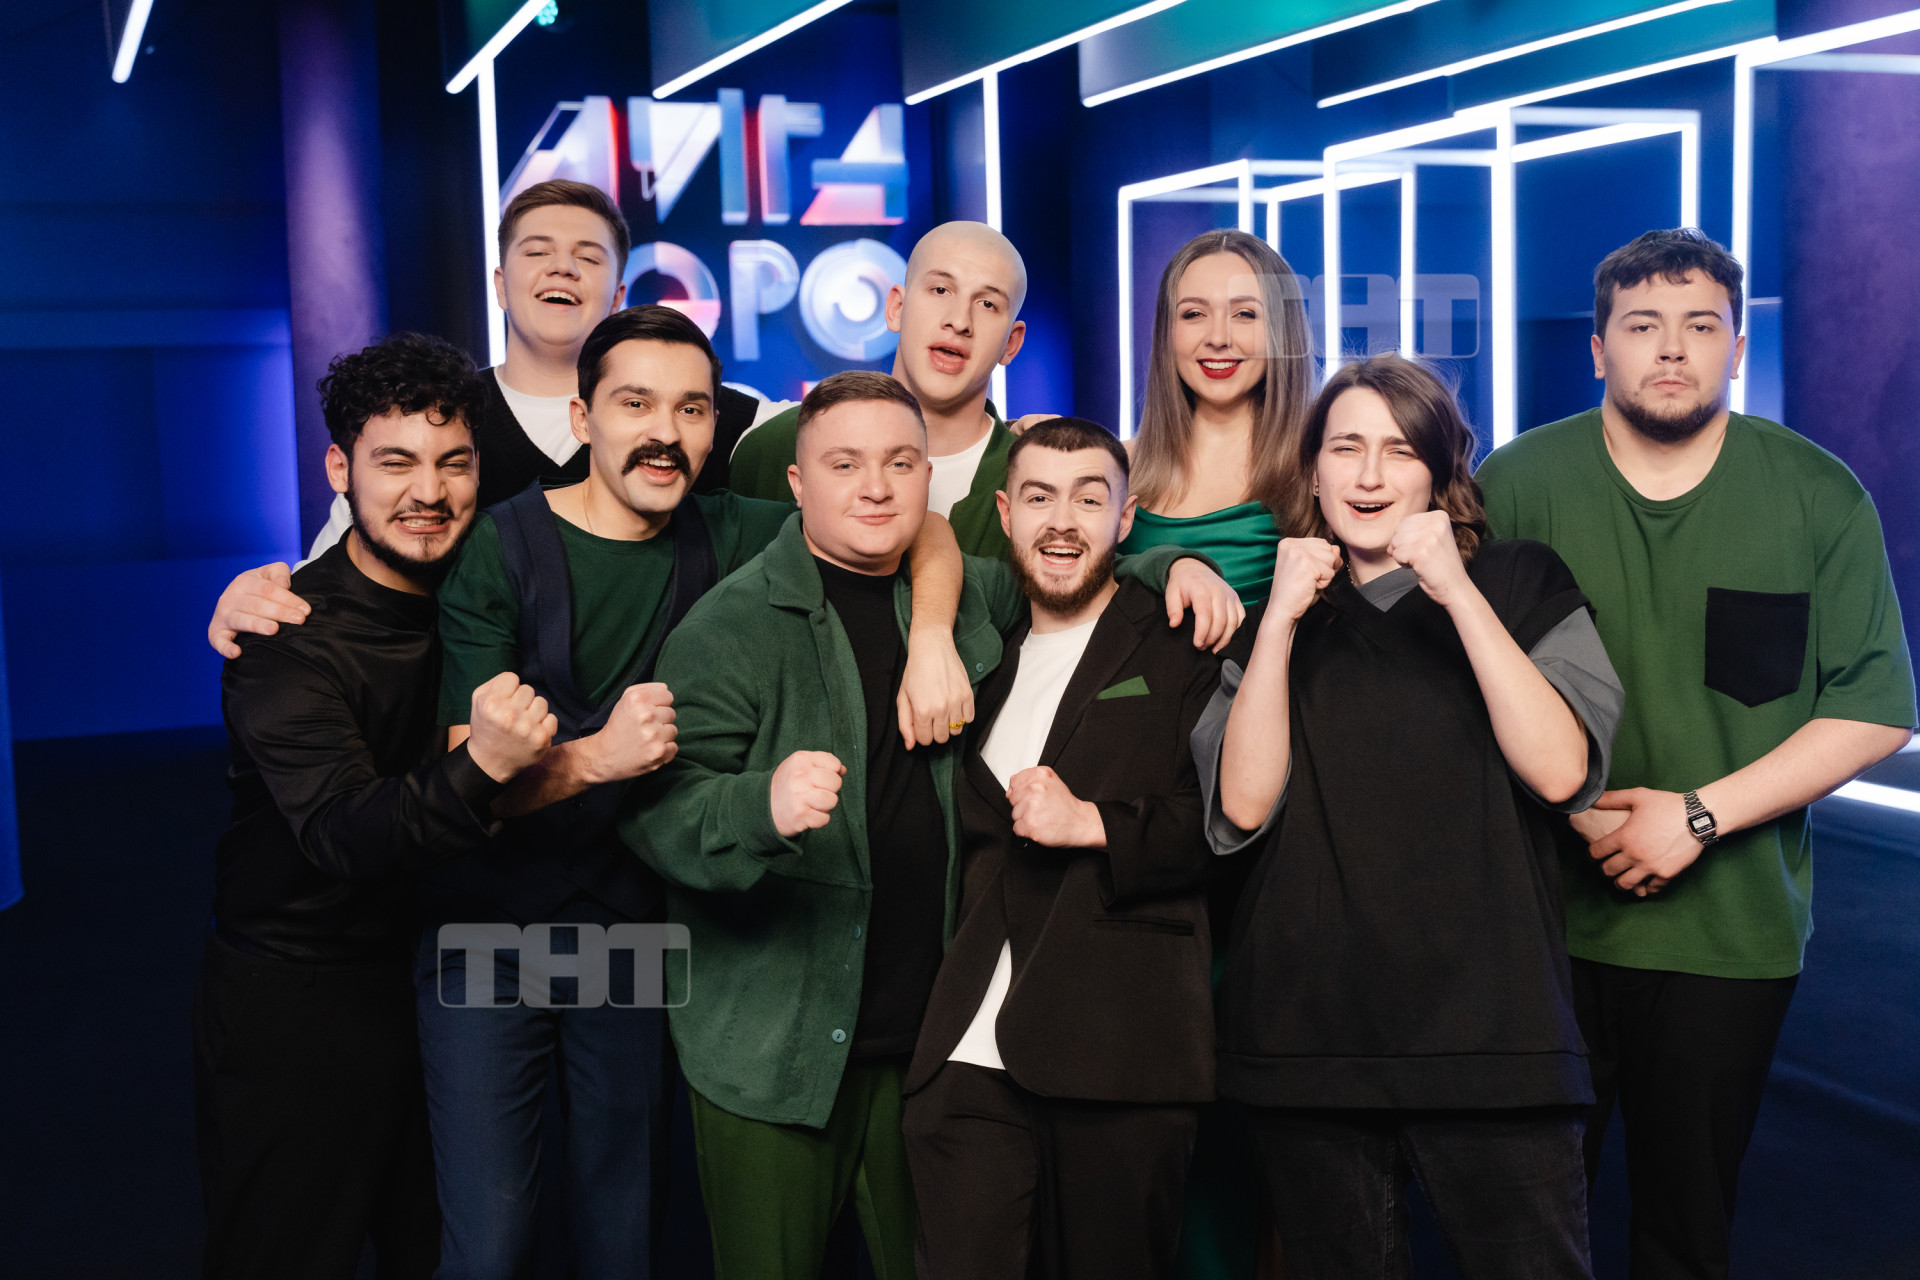 О Ставрополе будут говорить все больше: ставропольские комики рассказали об участии в шоу на федеральном канале